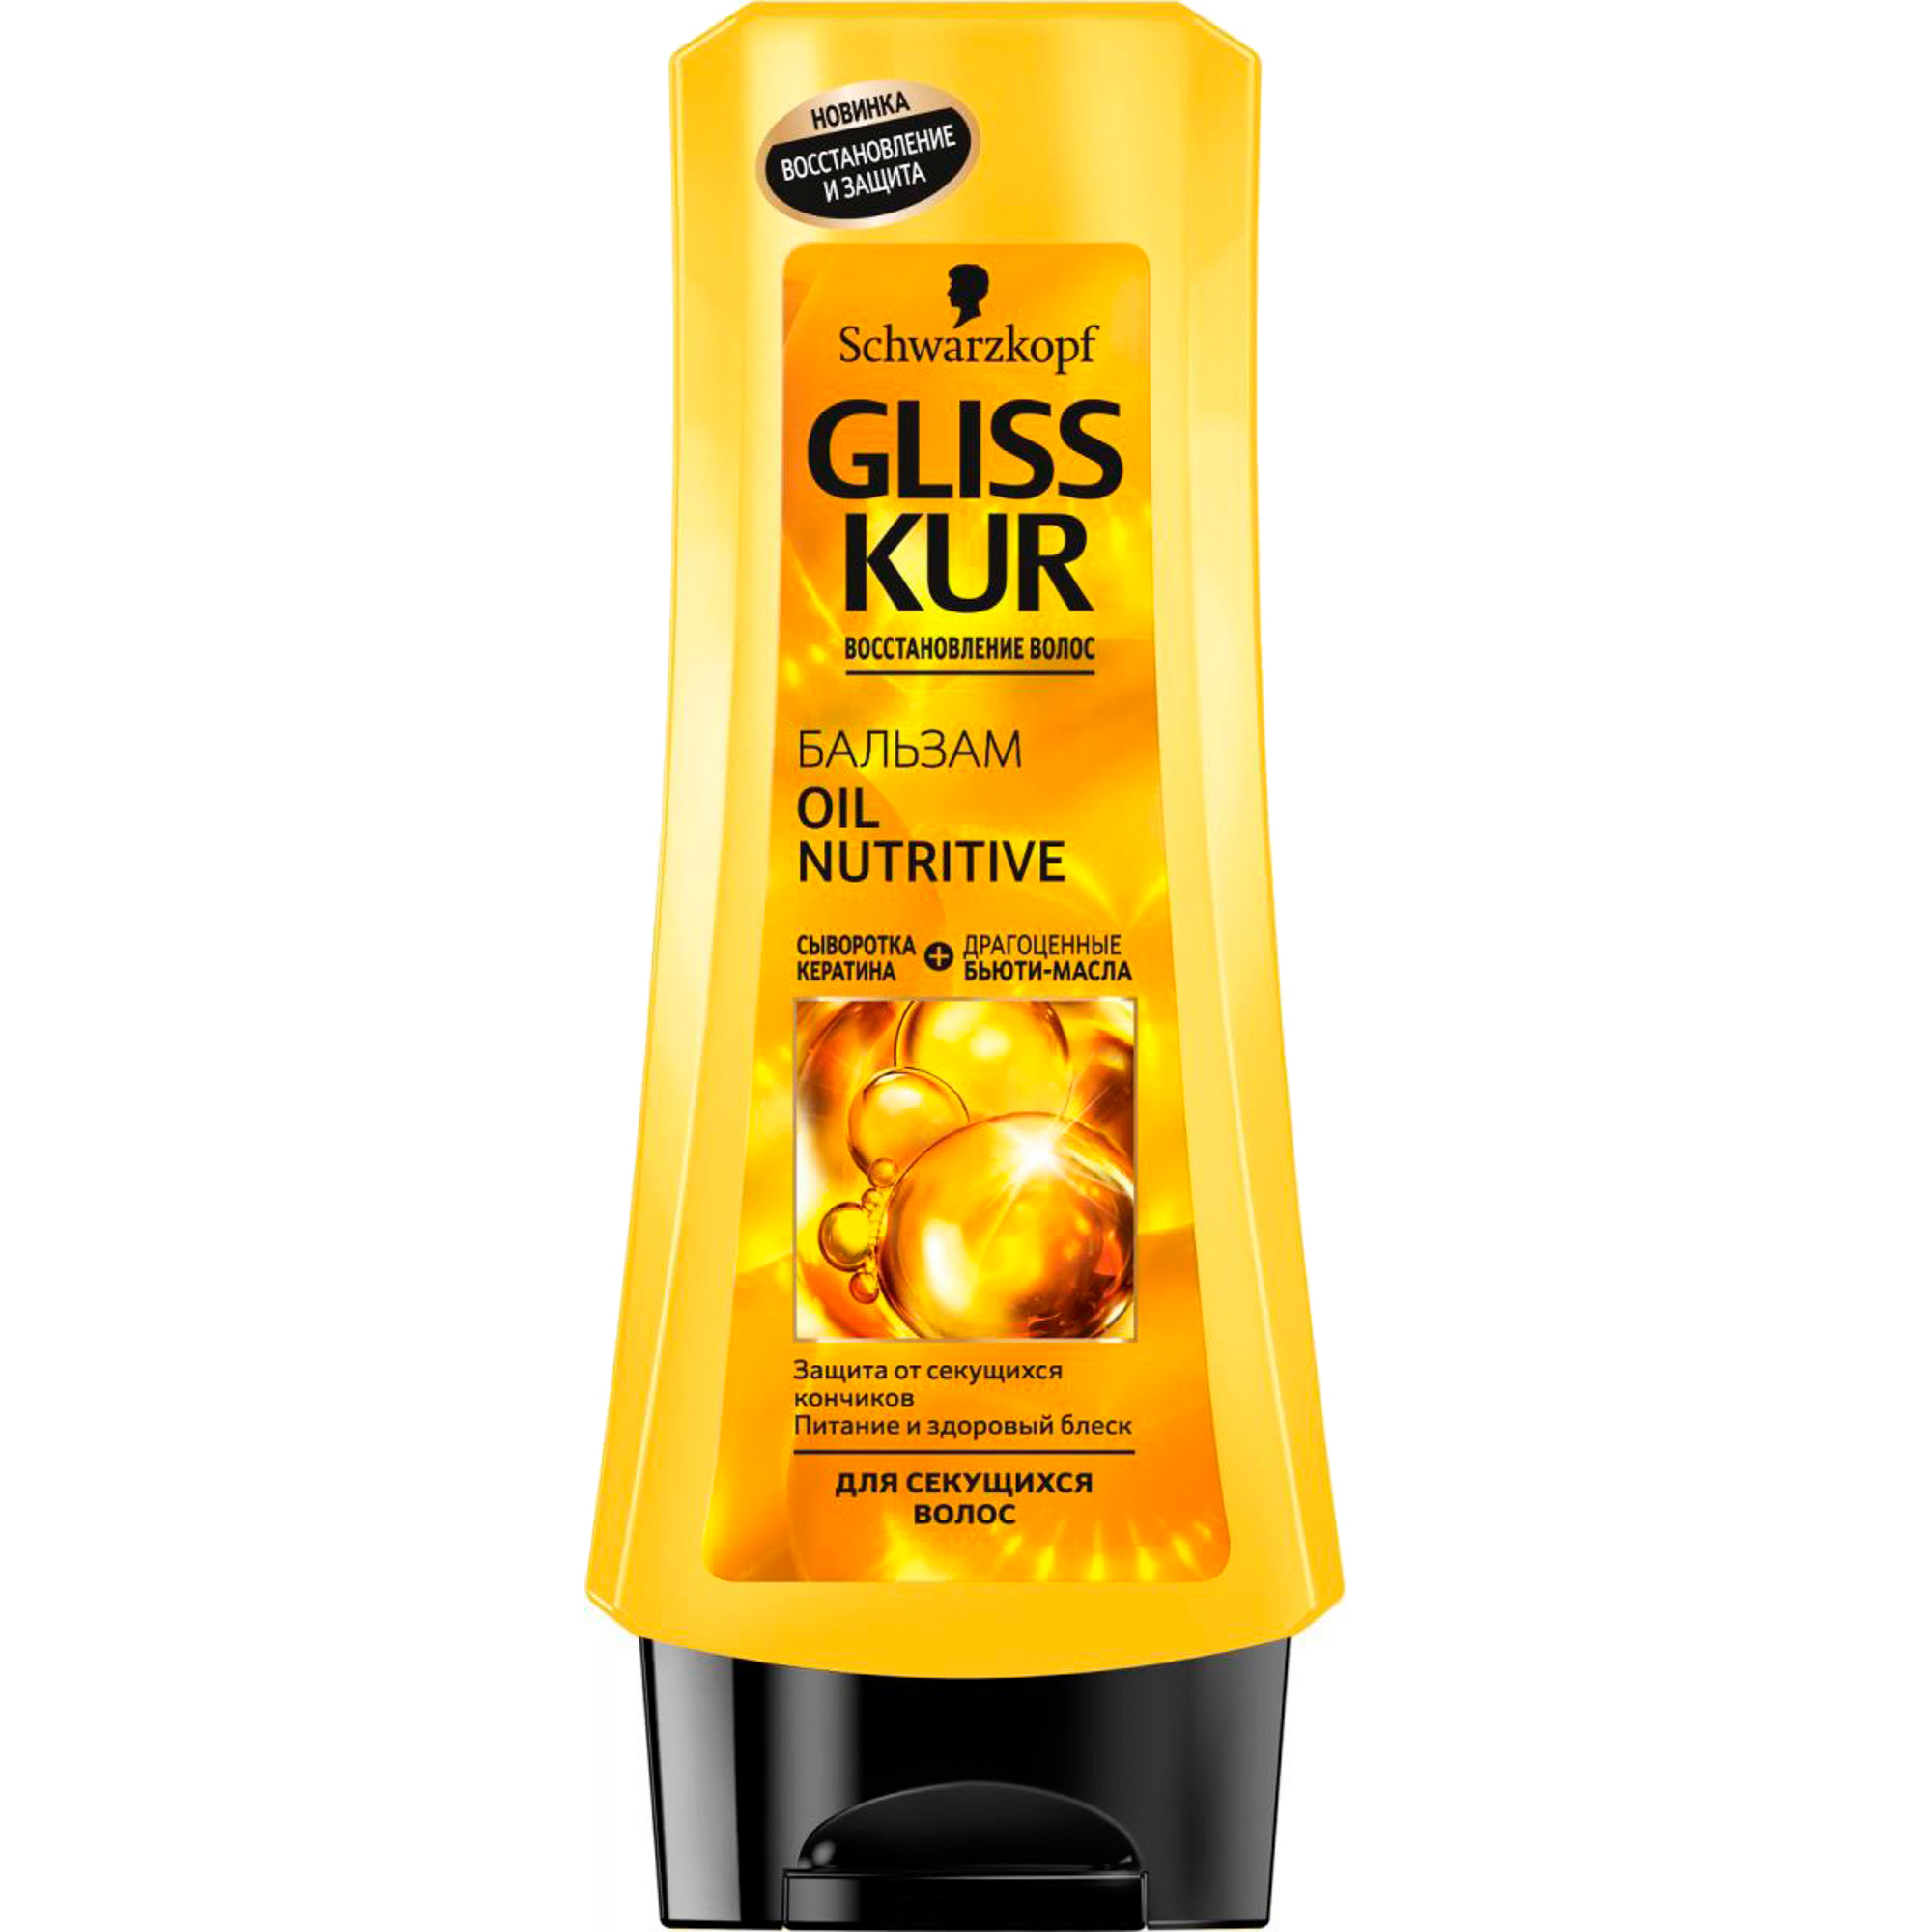 Бальзам GLISS KUR Oil Nutritive 200 мл gliss kur маска для волос безупречно длинные